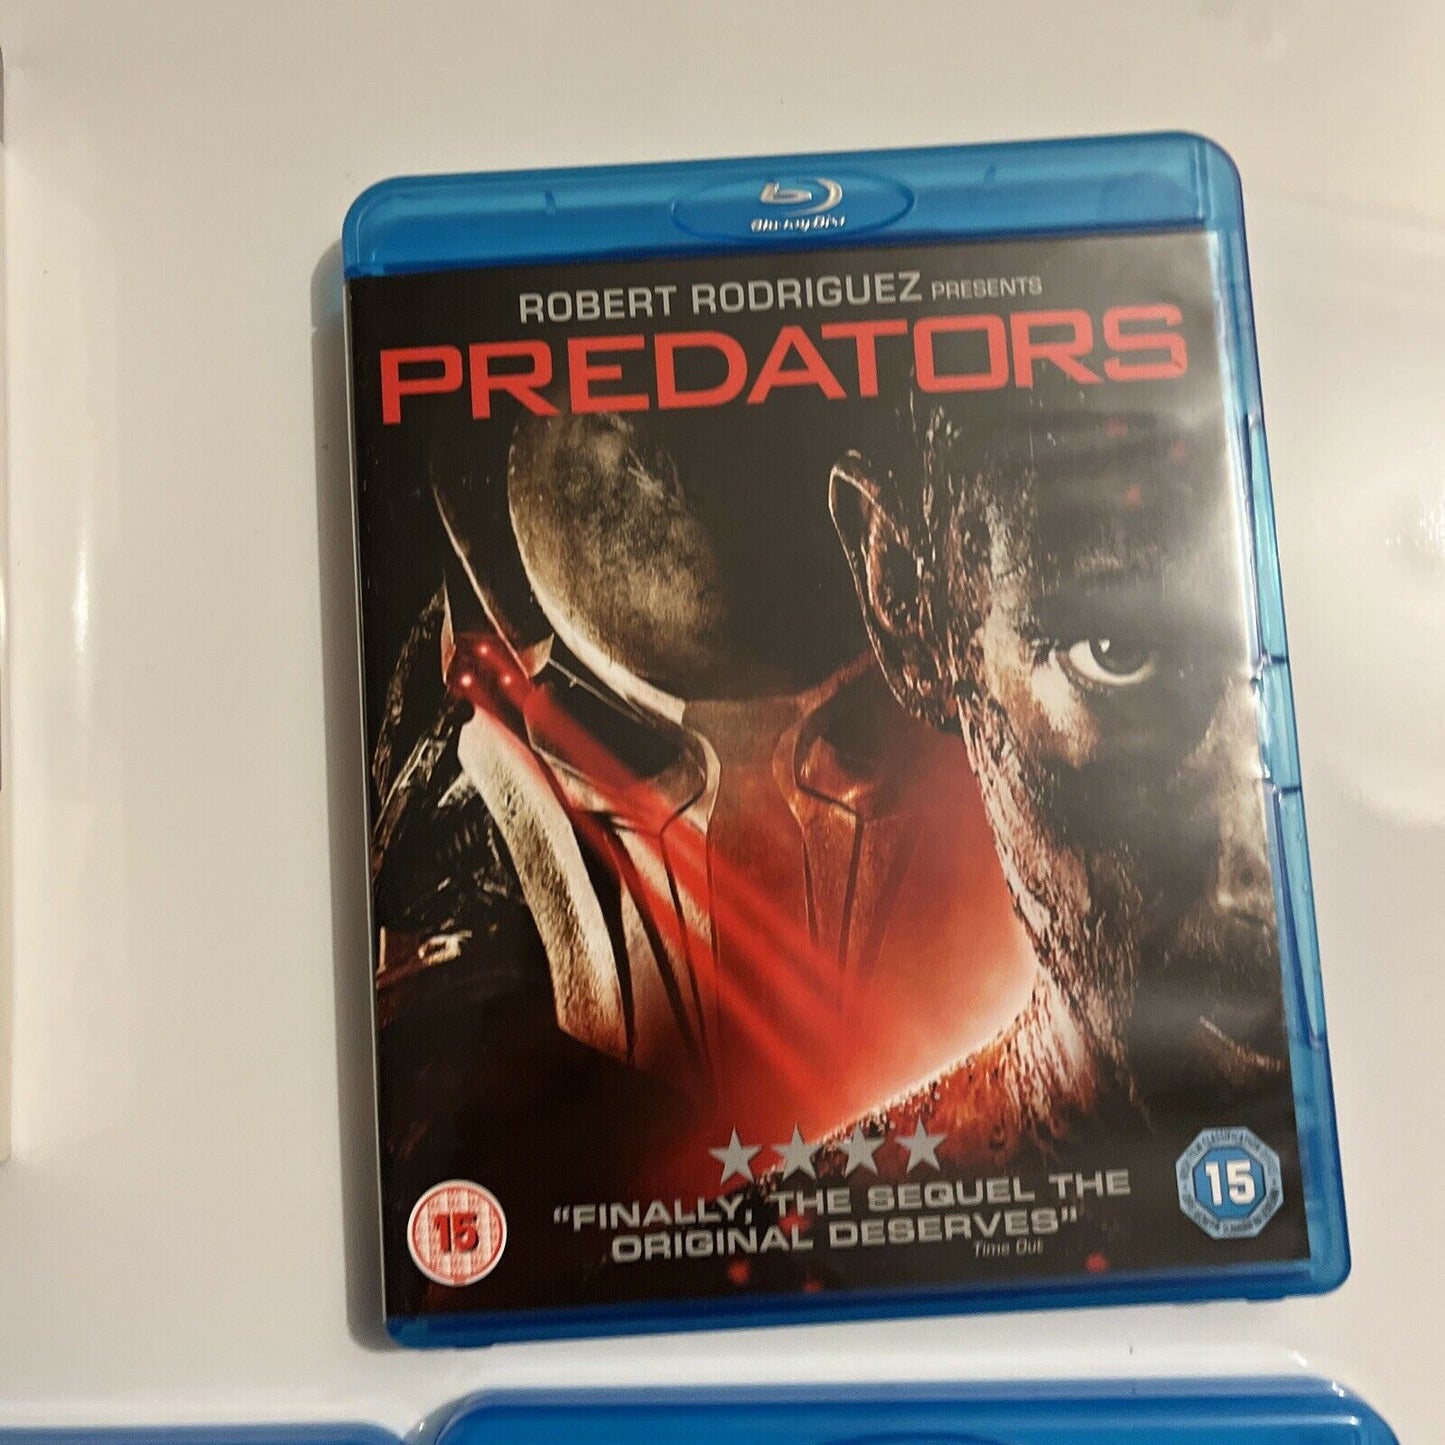 Predator Trilogy: Predator, Predator 2, Predators (Bluray, 6-Disc) Region B&A